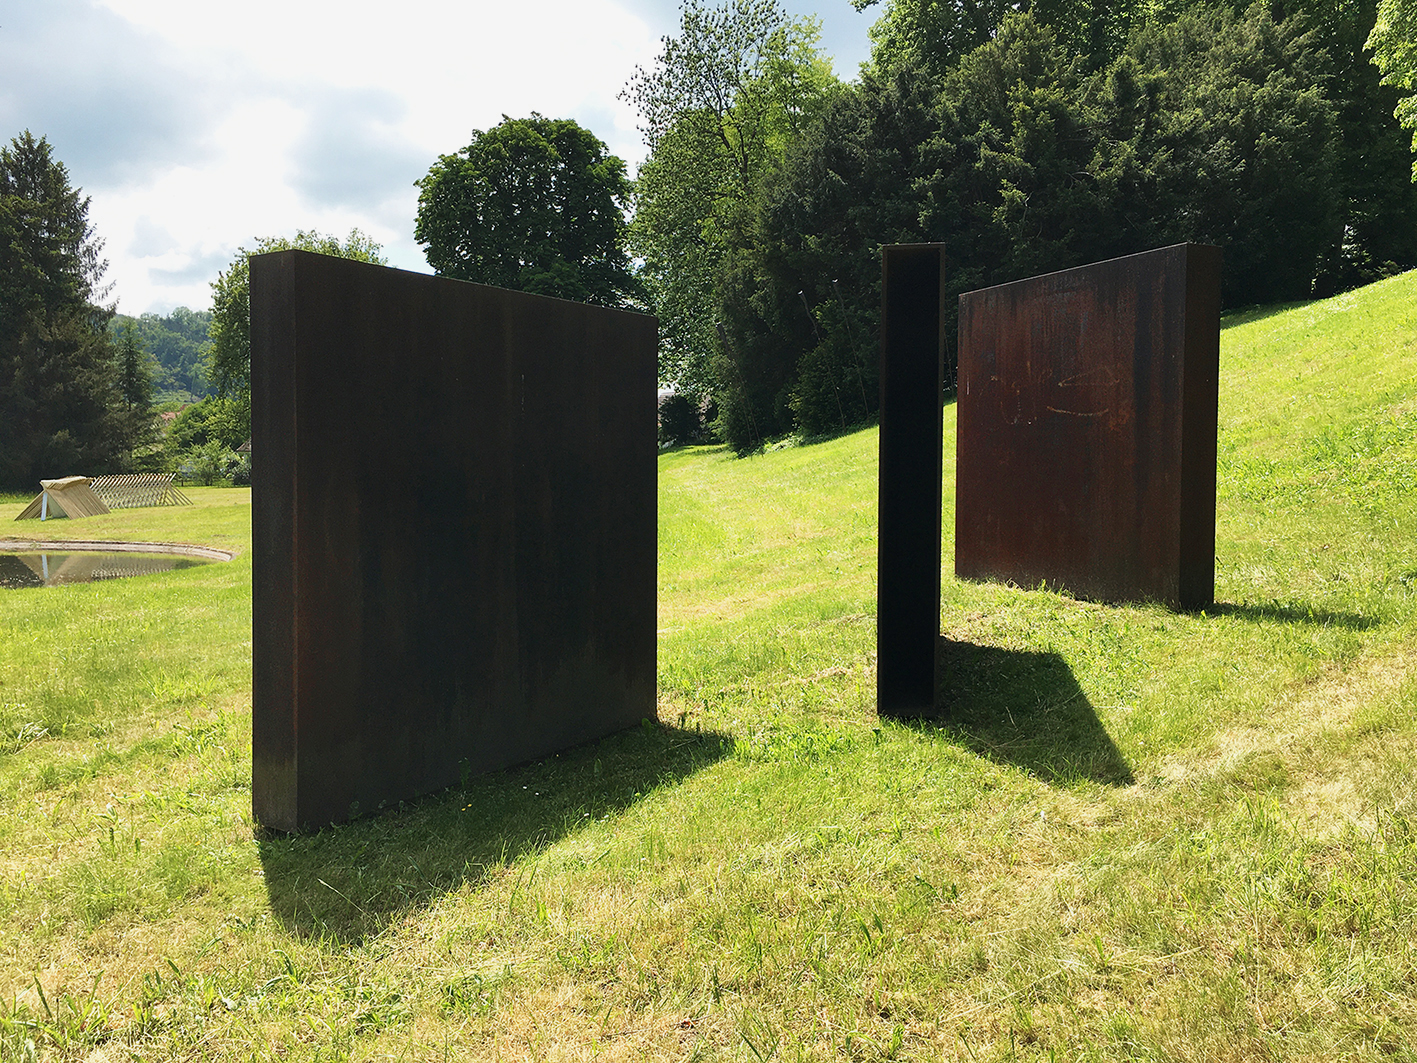 Die Eisen-Plasik von Claudio Magoni ist ein Beispiel der Minimal-Art und steht als Spurensicherung zeitgenössischer Kunst im histrischen Umfeld des Schlosspark Ebenrain in CH-Sissach BL. Sie ist Teil der Sammlung Kunst im öffentlichen Raum des Kanton Basel-Landschaft.